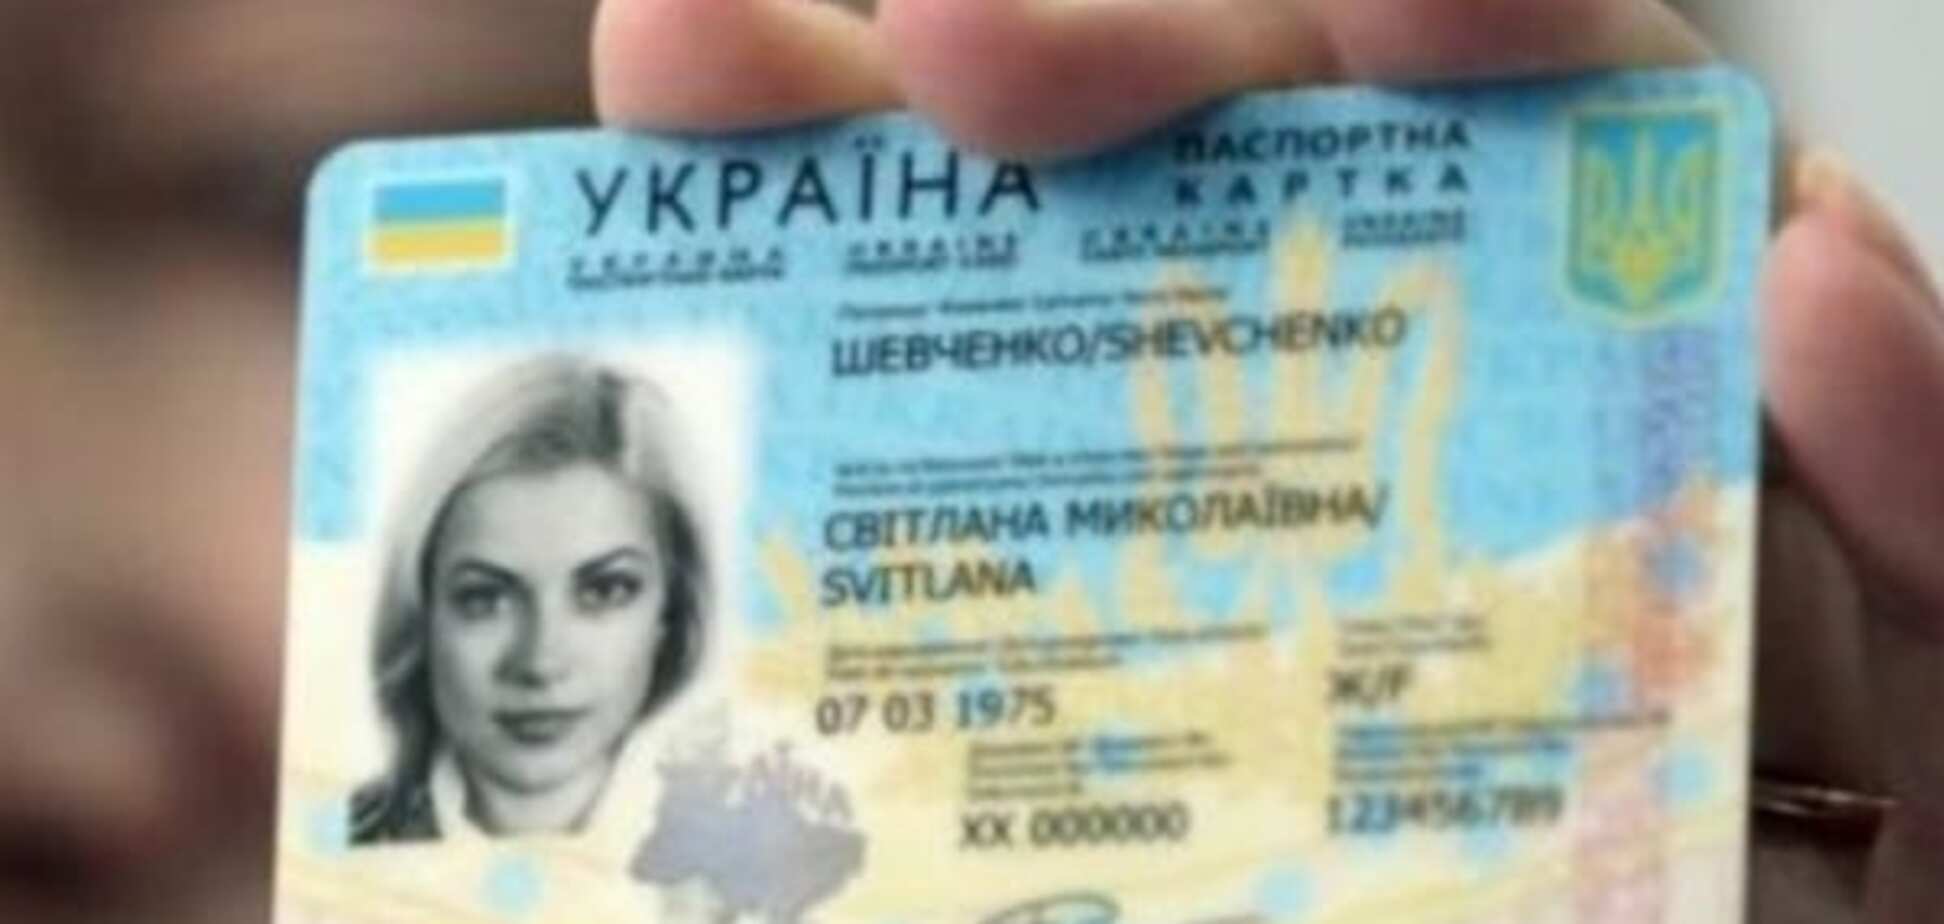 Електронні паспорти: в Україні починається видача нових документів